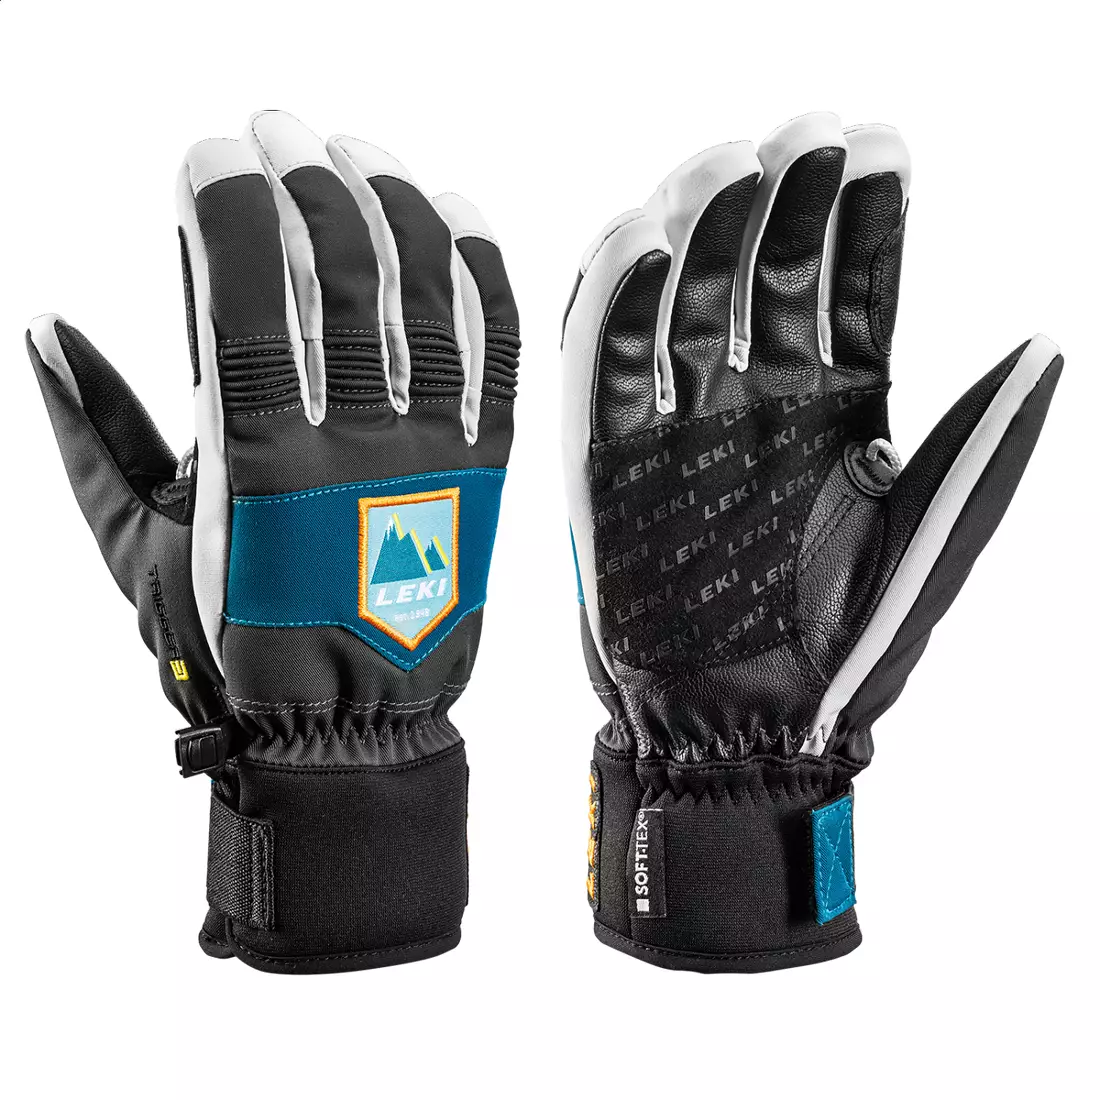 LEKI Patrol 3D Jr. Children's ski gloves, gray and blue